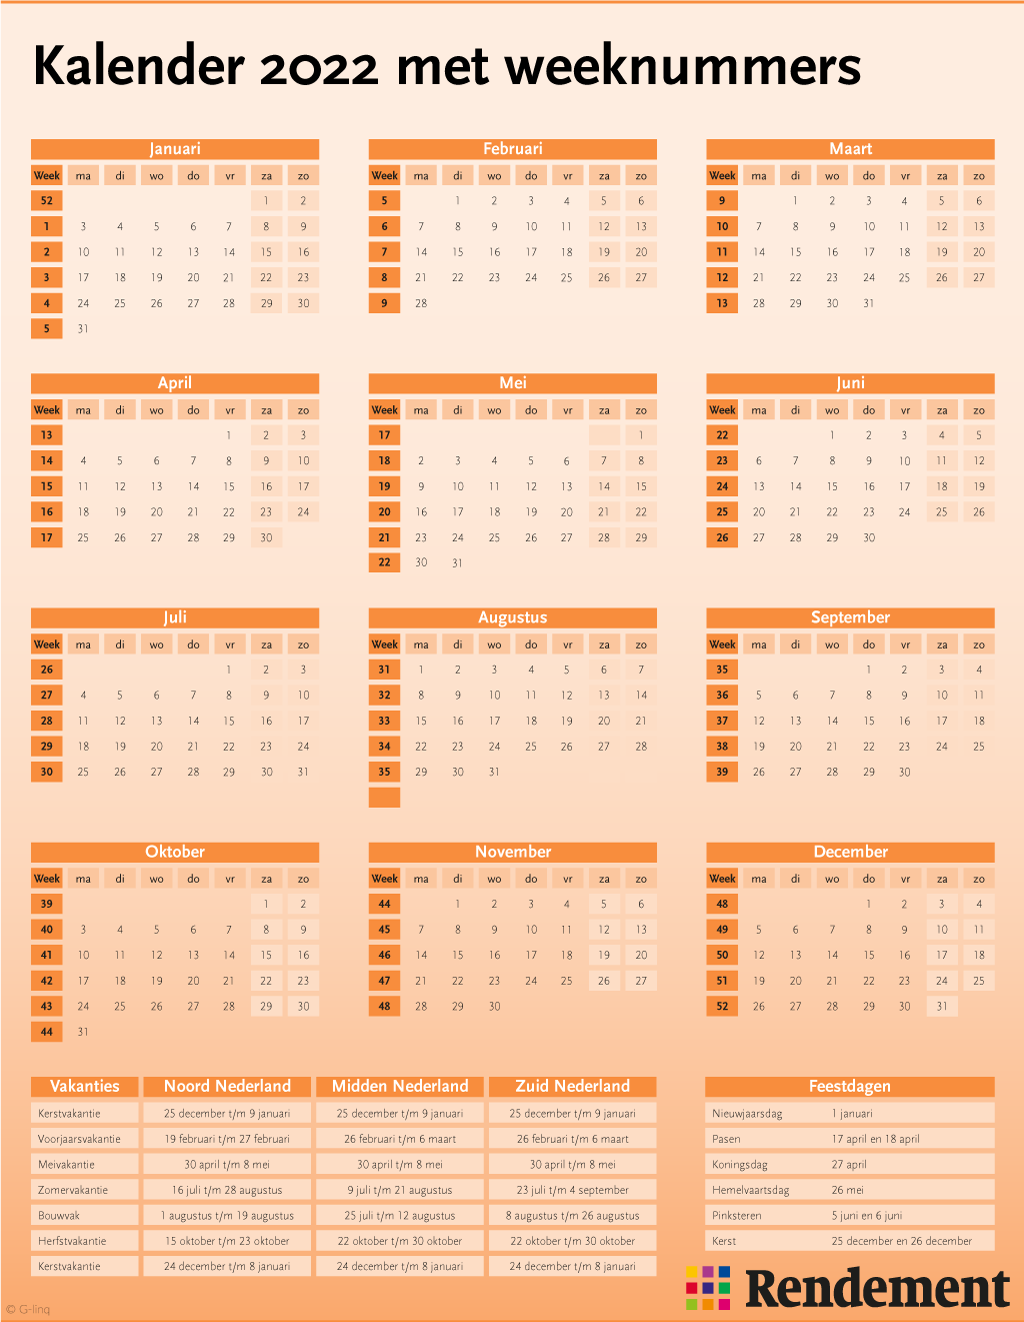 Hoe ziet de jaarkalender van 2022 eruit? U vindt hem hier, met weeknummers en de feestdagen en de schoolvakanties in 2022.